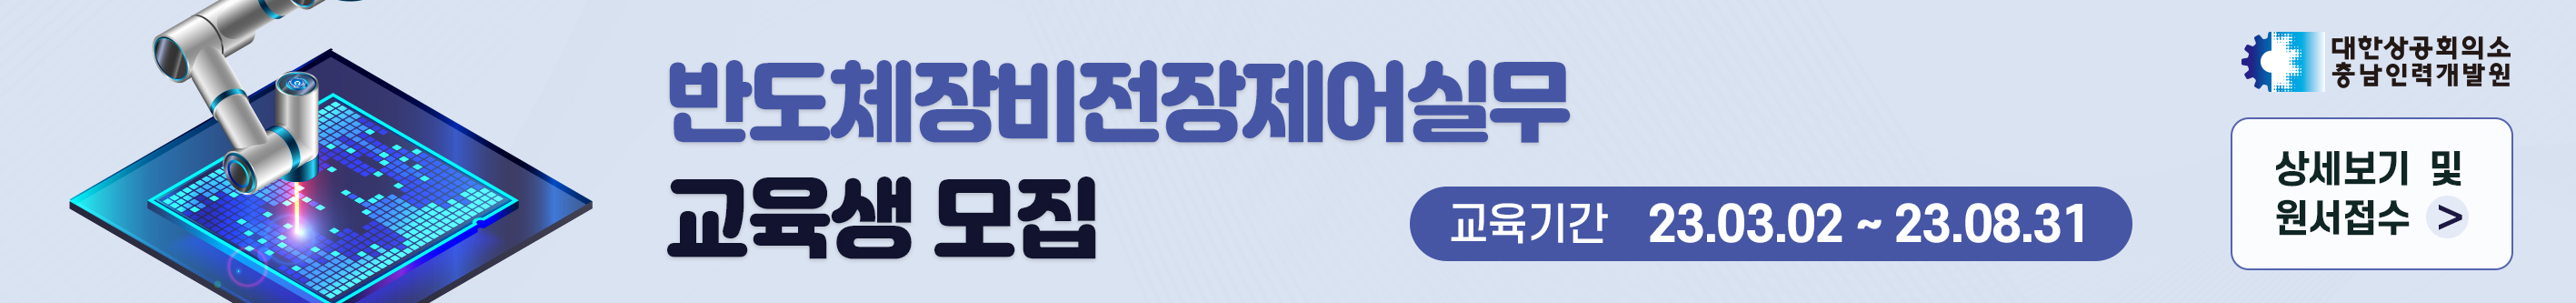 20221213_충남인력개발원_상단배너_1.jpg